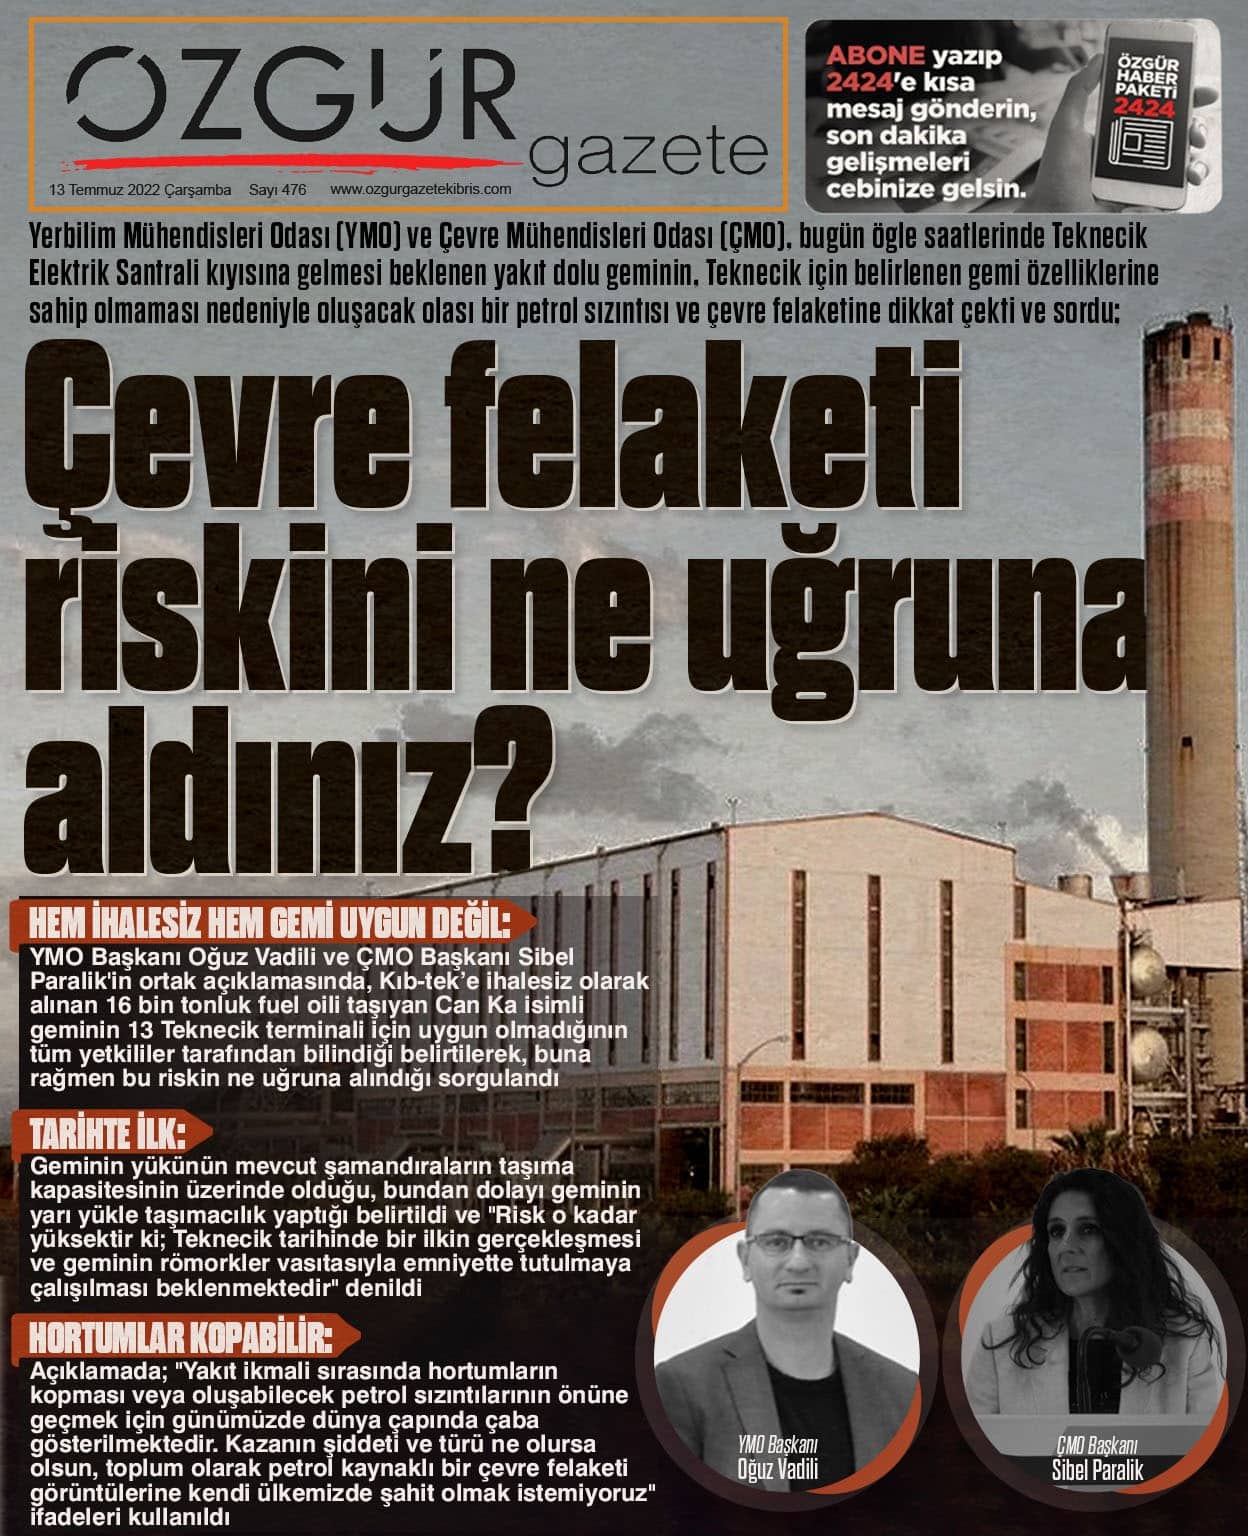 ozgur_gazete_kibris_teknecik_elektrik_santrali_gemi_yakit